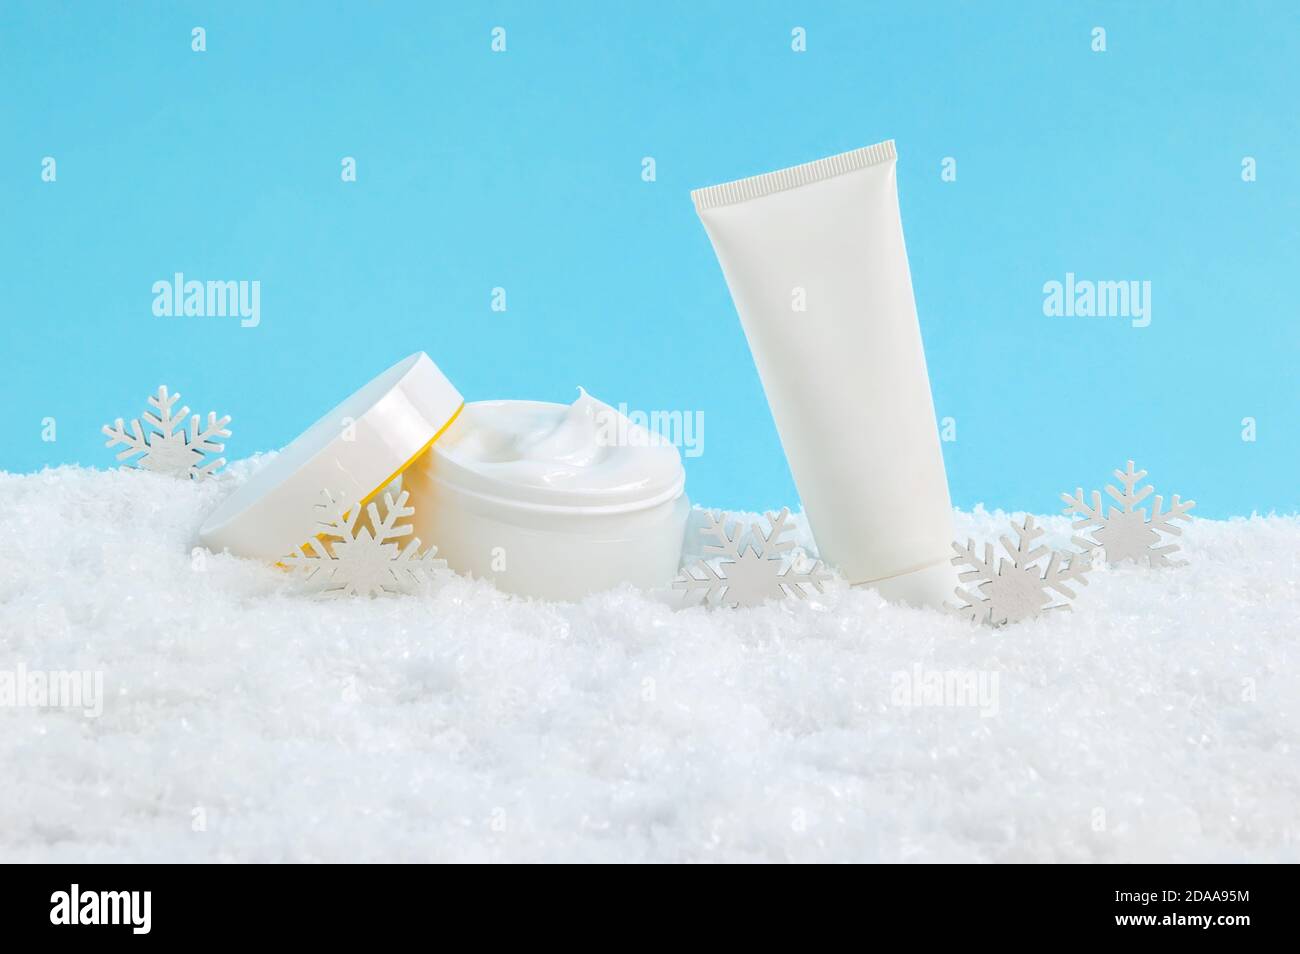 Geöffnetes Gesichts-Creme-Glas und Handcreme oder Körperlotion Tube im Schnee und Schneeflocken auf blauem Hintergrund. Winter Hautpflege Kosmetik-Produkte Stockfoto